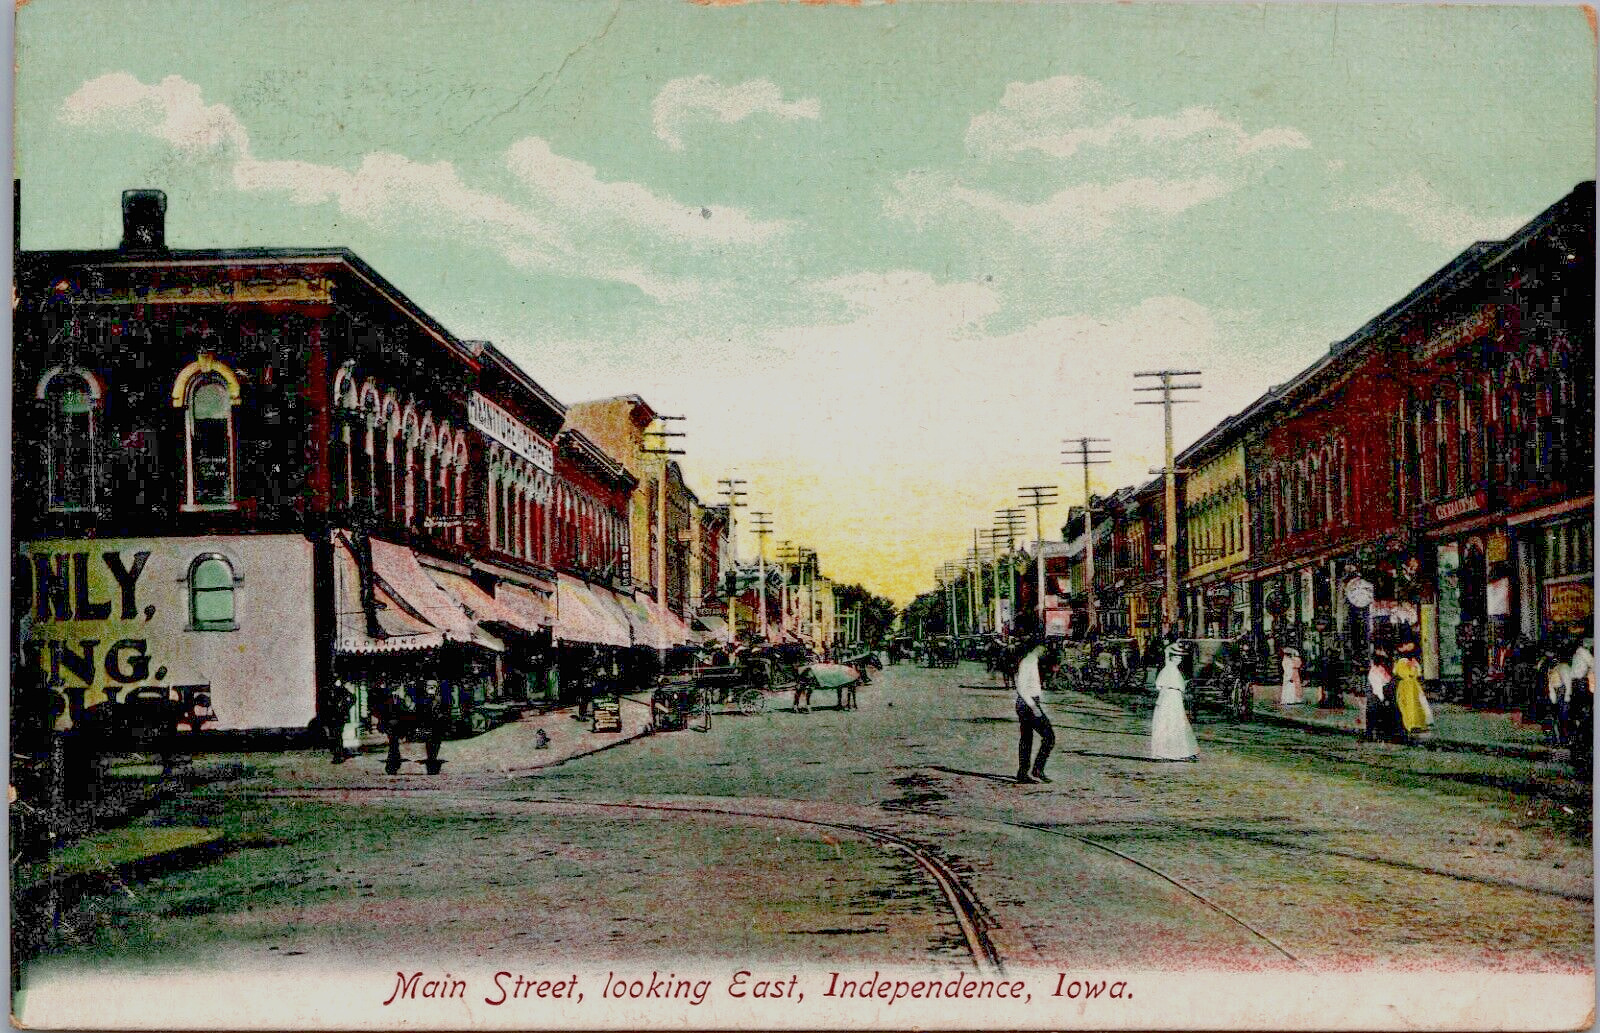 USA Main Street Looking East Independence Iowa Vintage Postcard B152